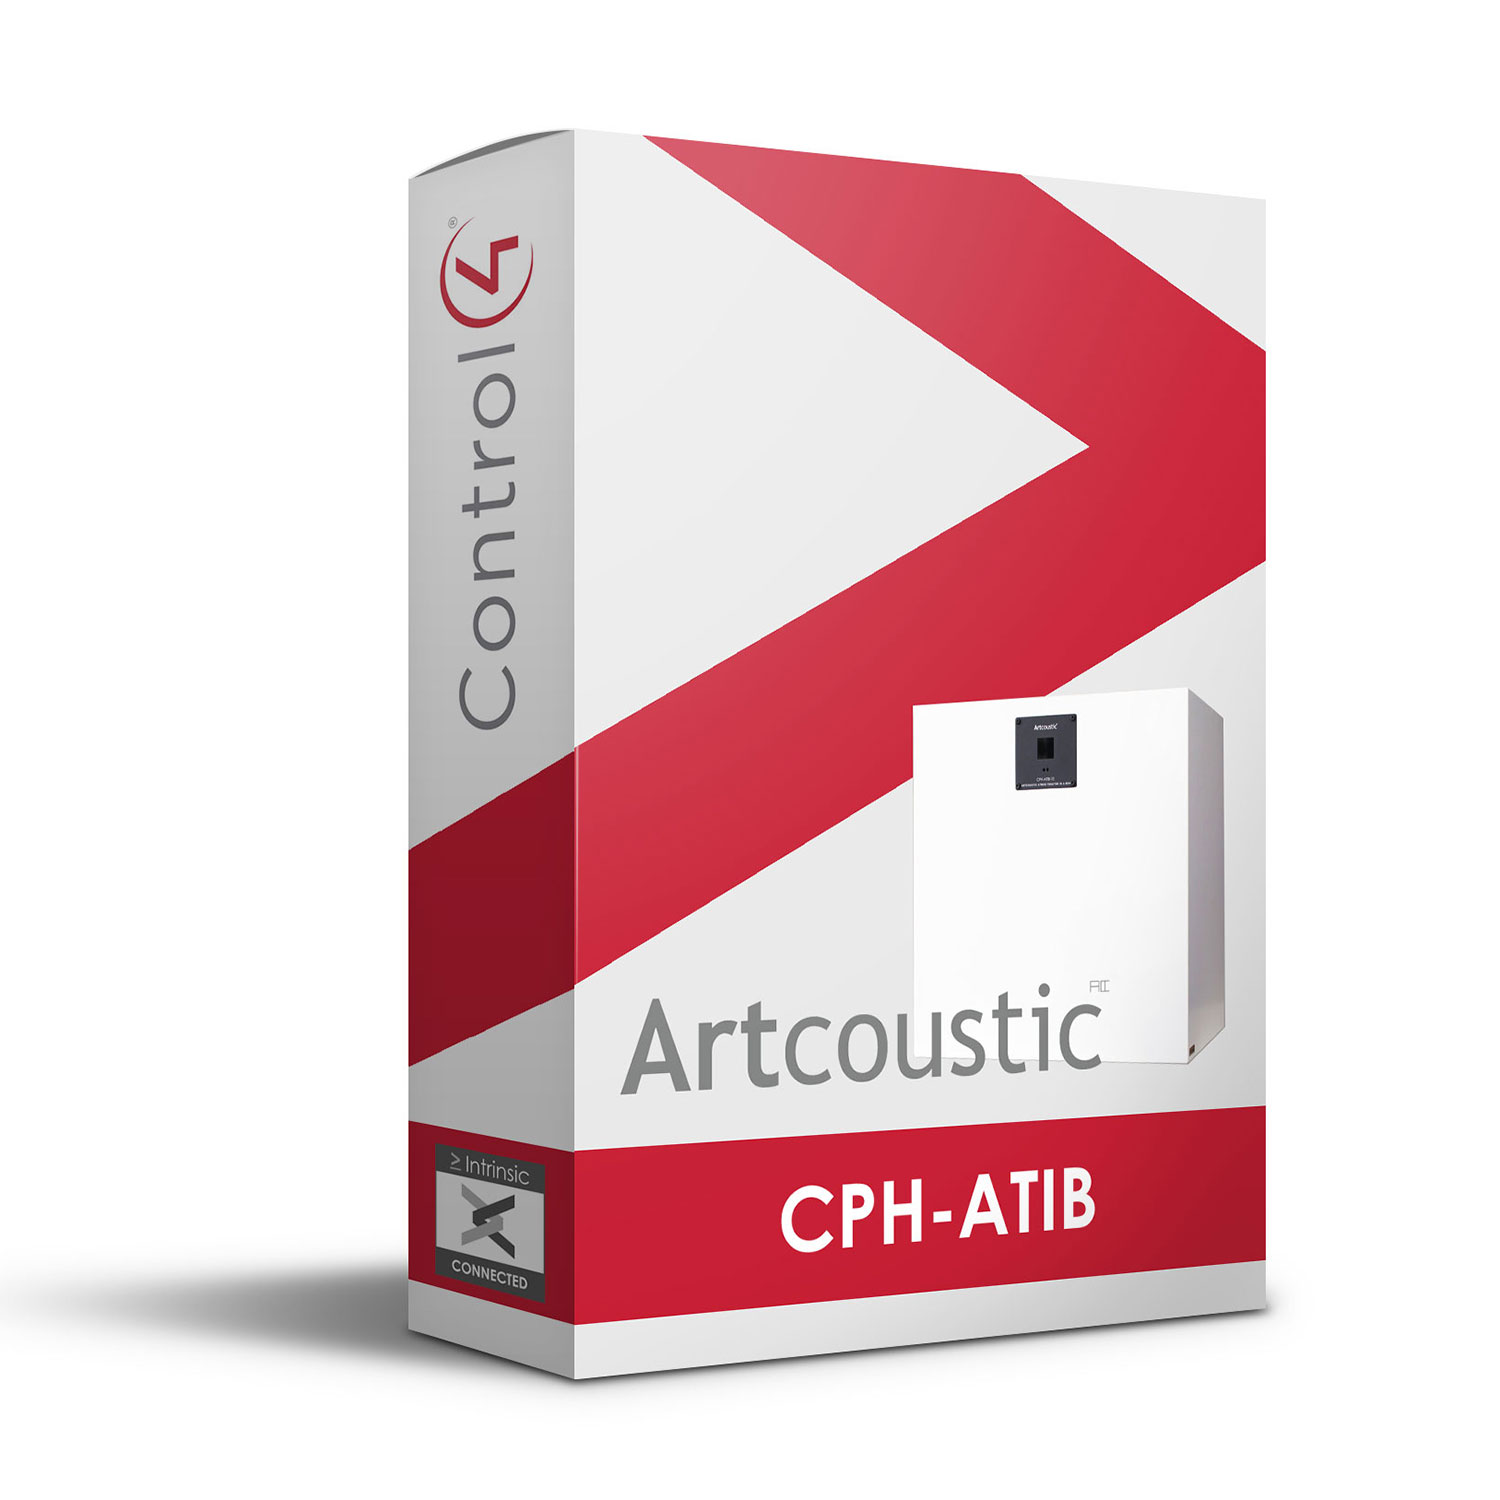 Artcoustic CPH-ATiB Driver for Control4